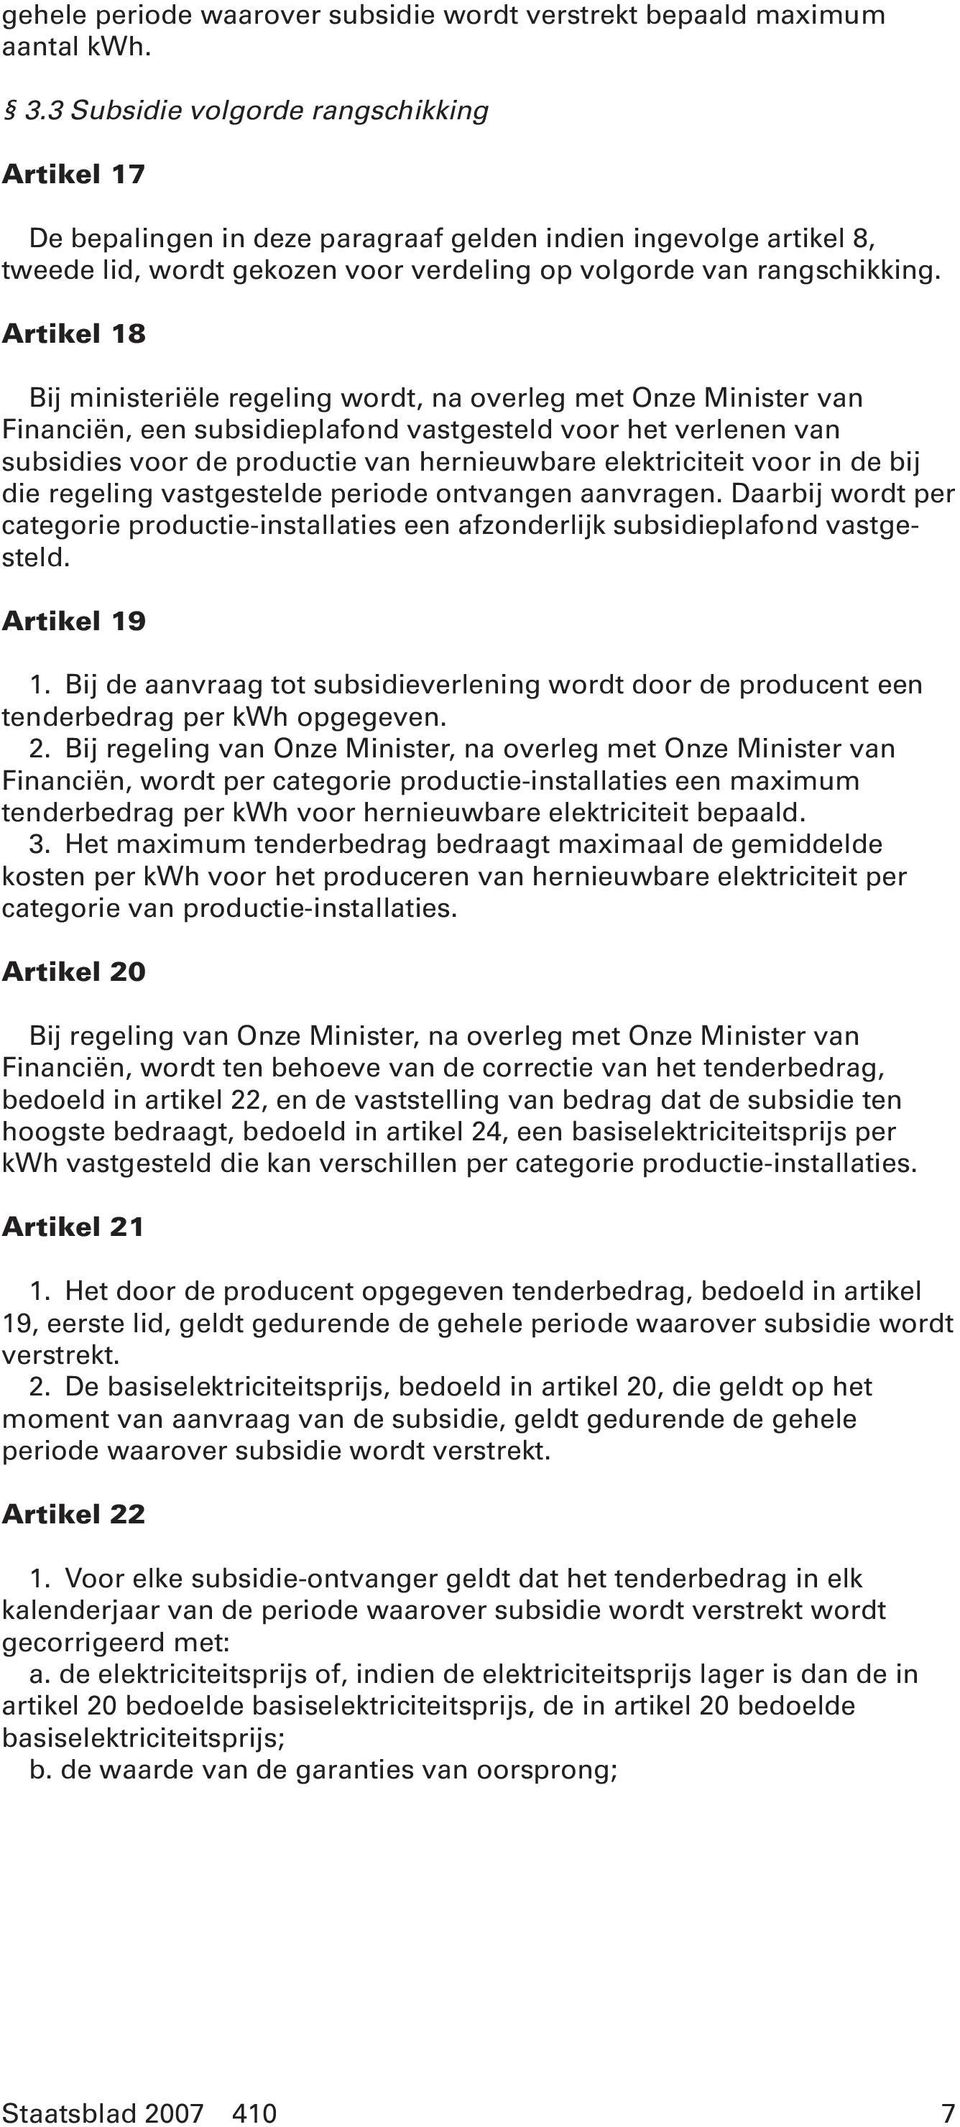 Artikel 18 Bij ministeriële regeling wordt, na overleg met Onze Minister van Financiën, een subsidieplafond vastgesteld voor het verlenen van subsidies voor de productie van hernieuwbare